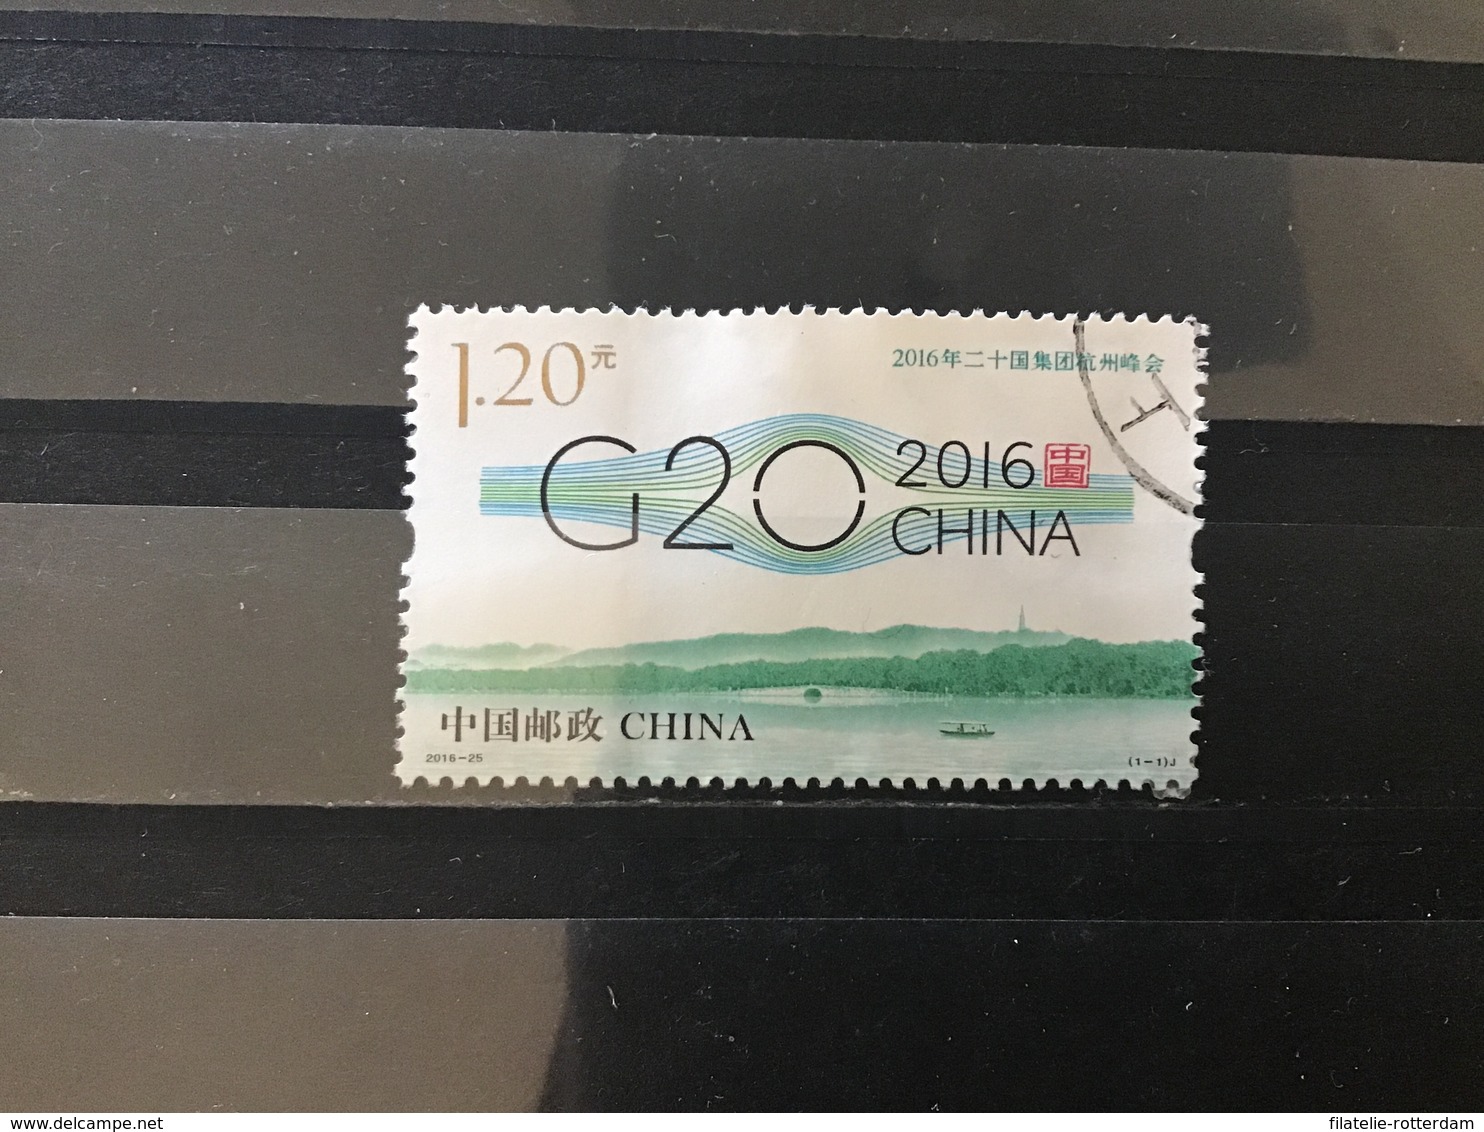 China / Chine - G20-top (1.20) 2016 - Gebruikt